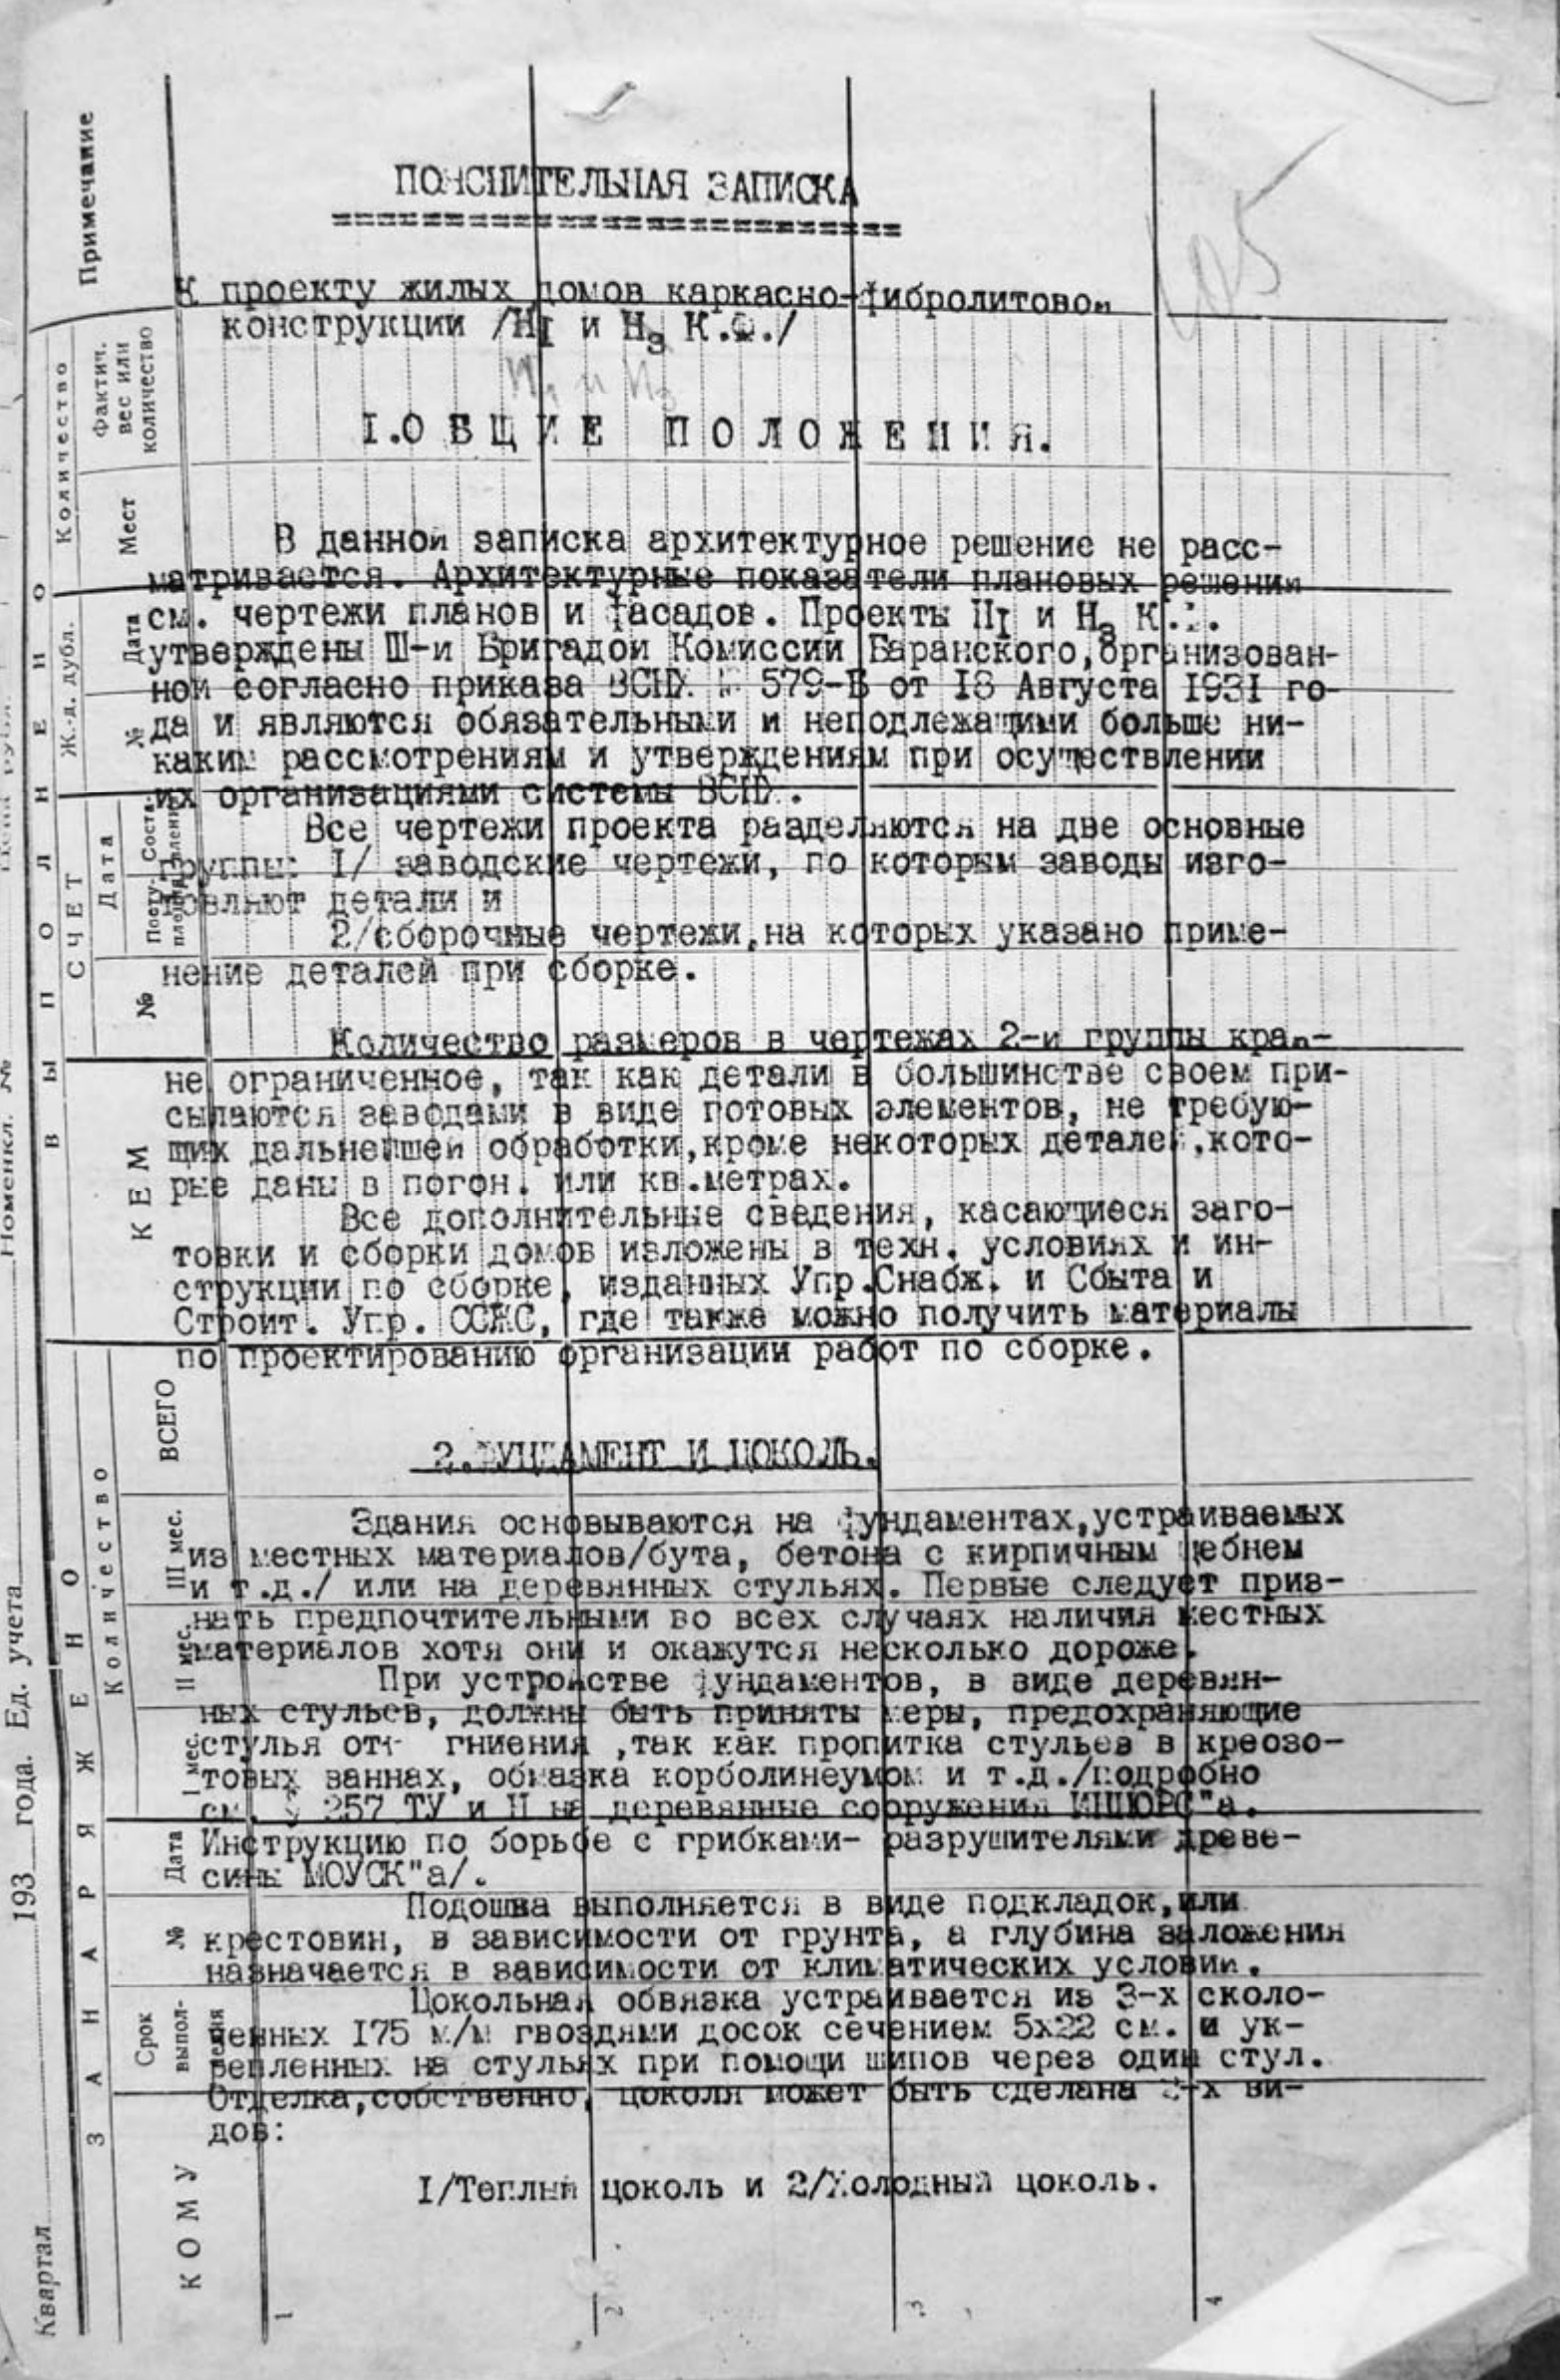 Производственные сметы на постройку различных объектов на Гольянском тракте (СОЦГОРОДе) 1932—1933